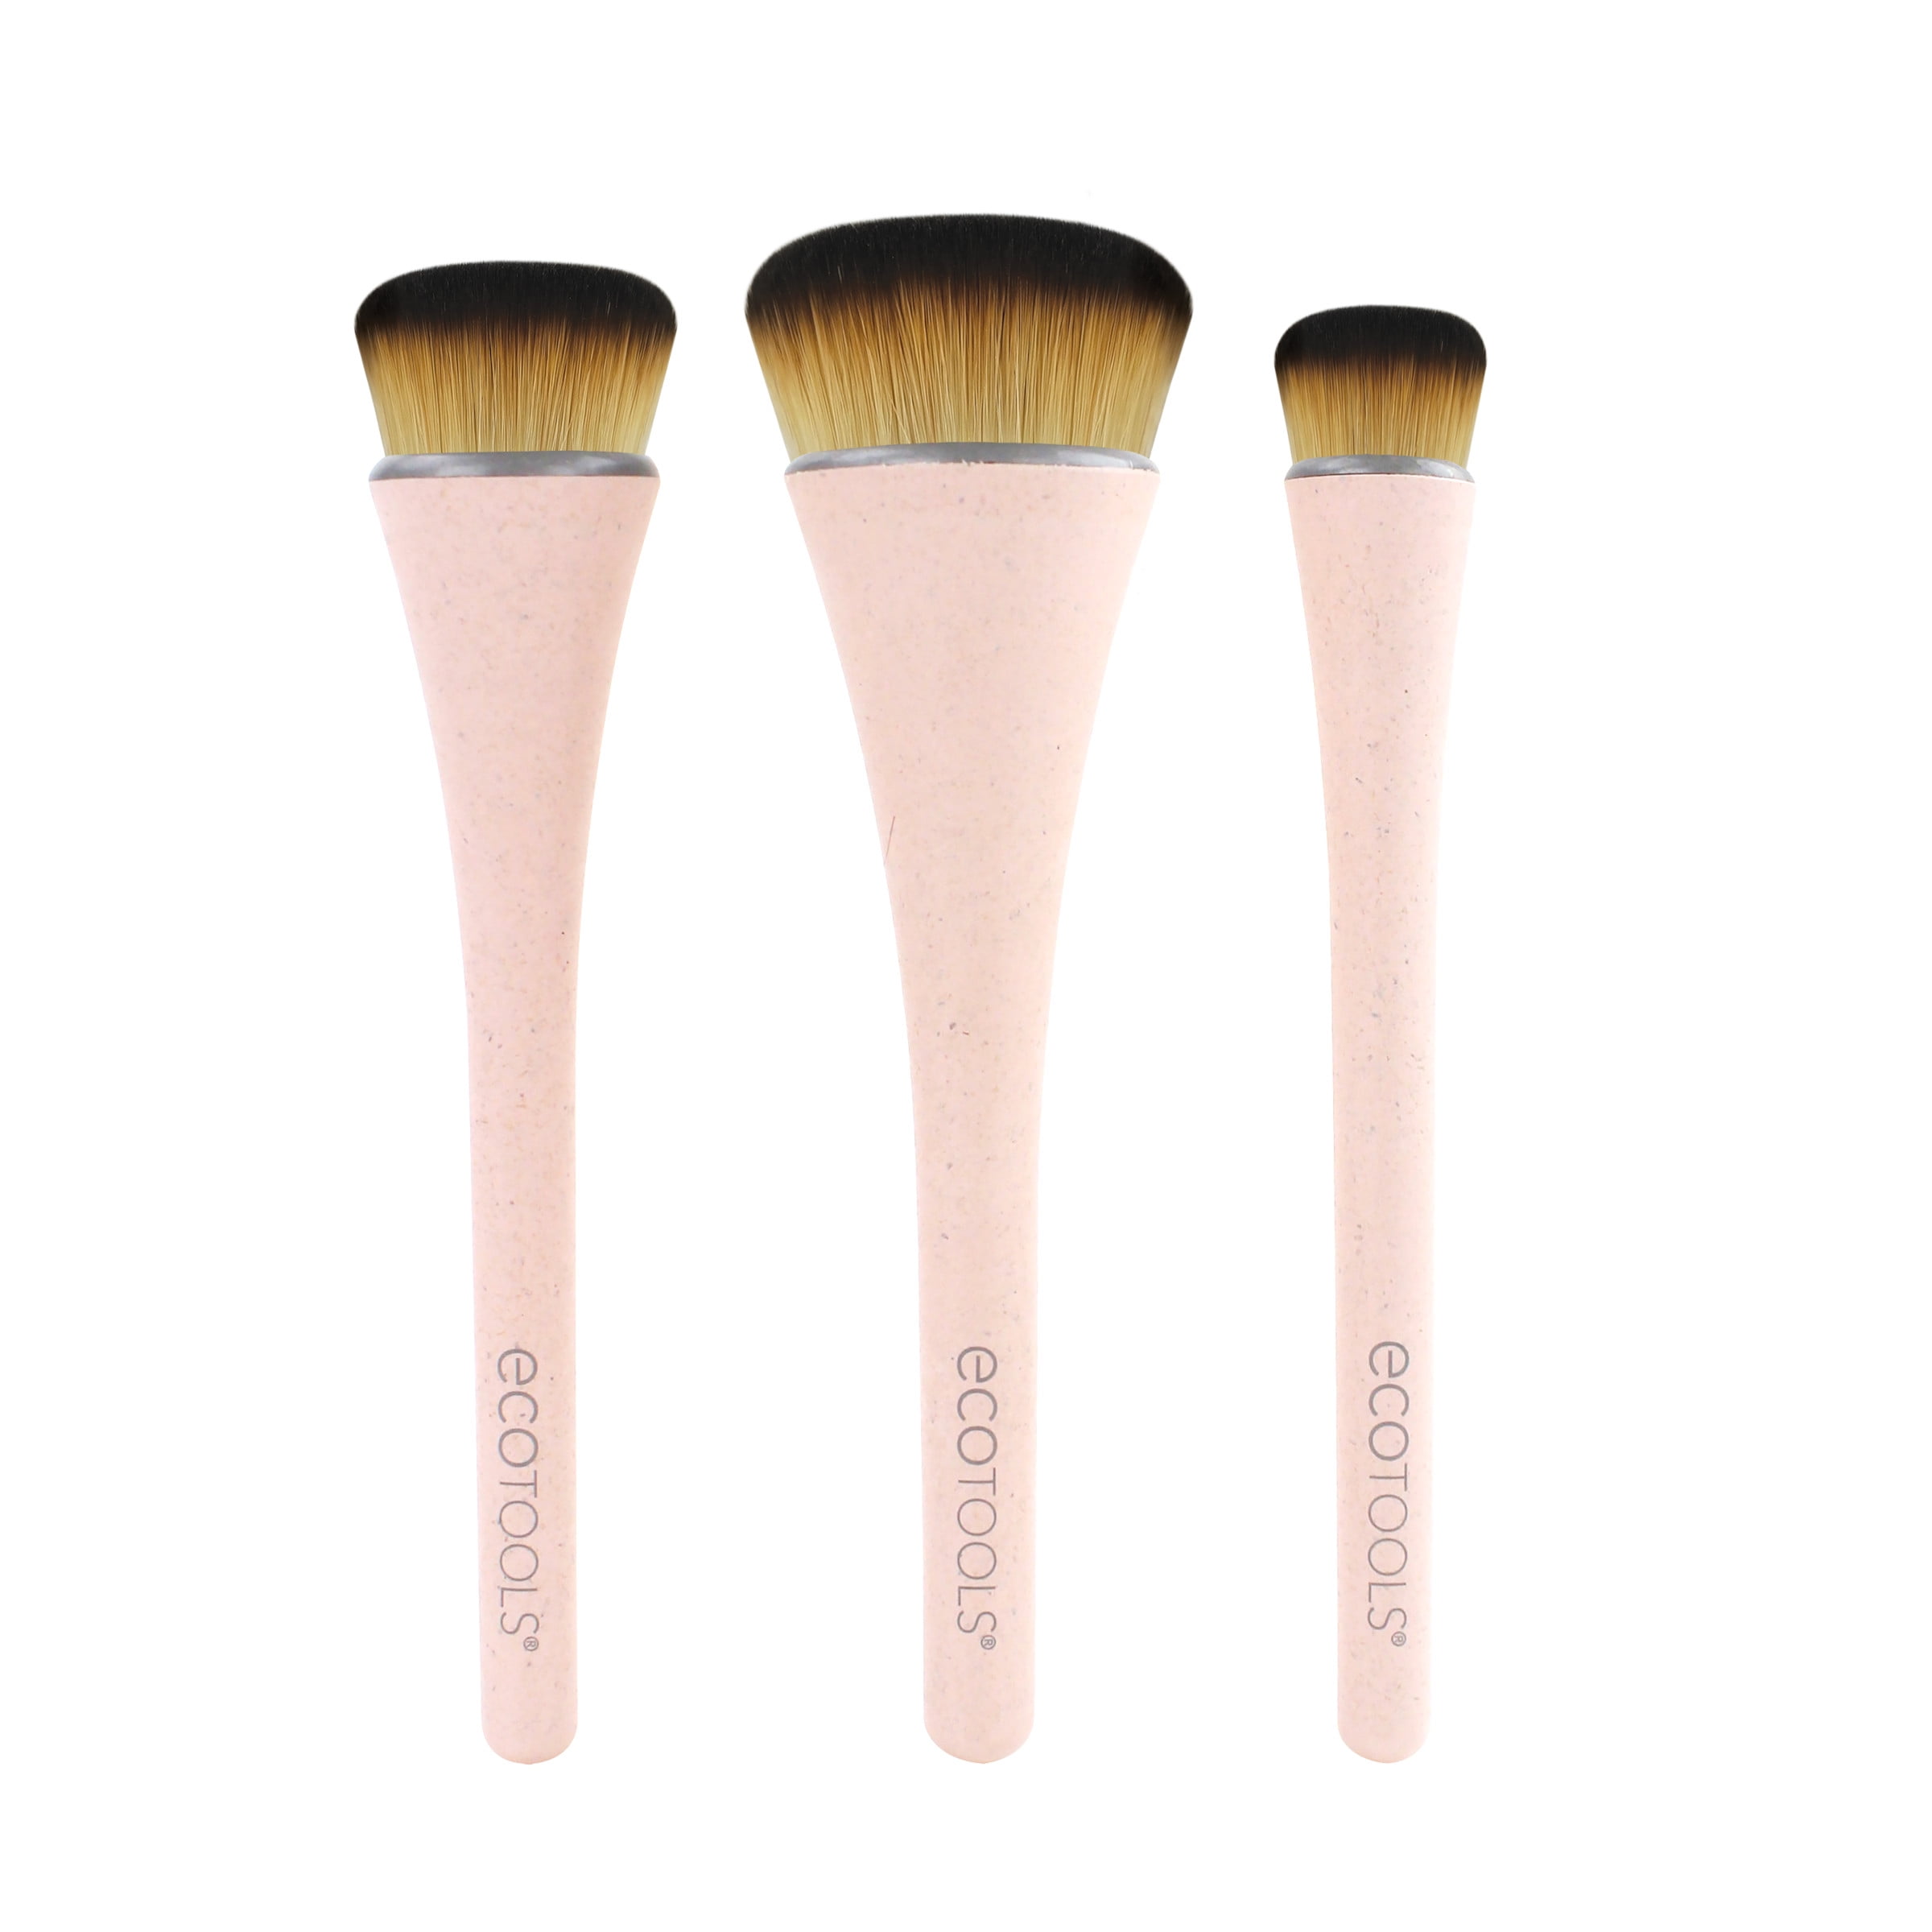 EcoTools 360 Ultimate Blend Makeup Brush Kit, 3 Piece Set